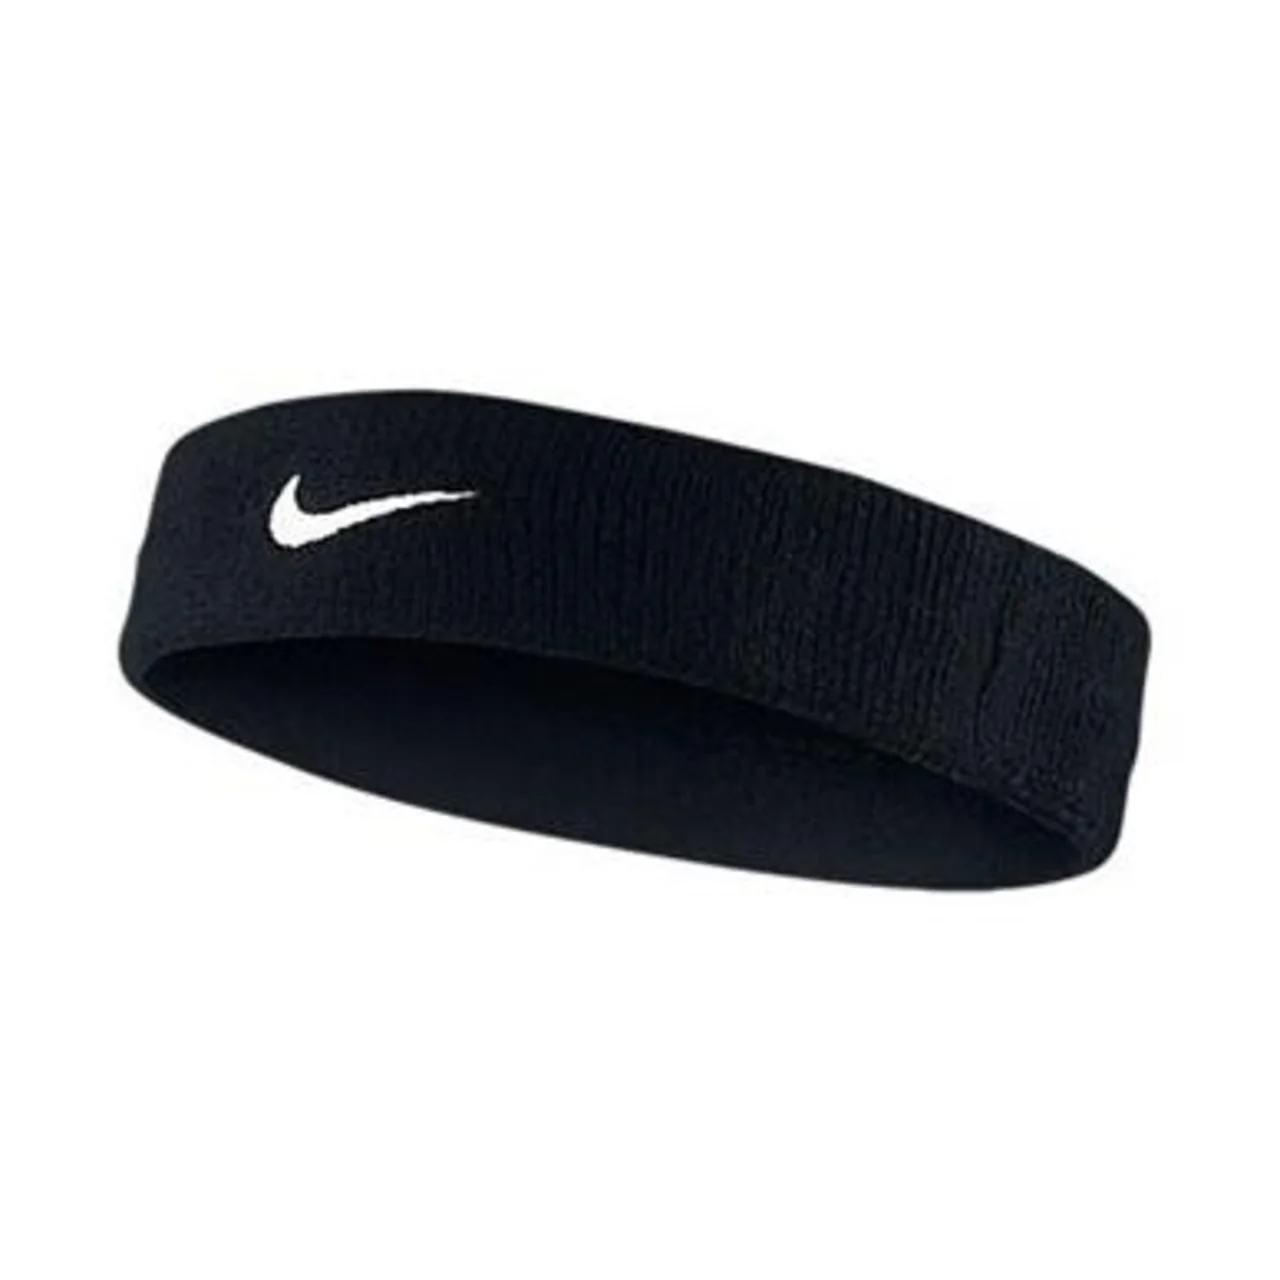 Nike Headband Black